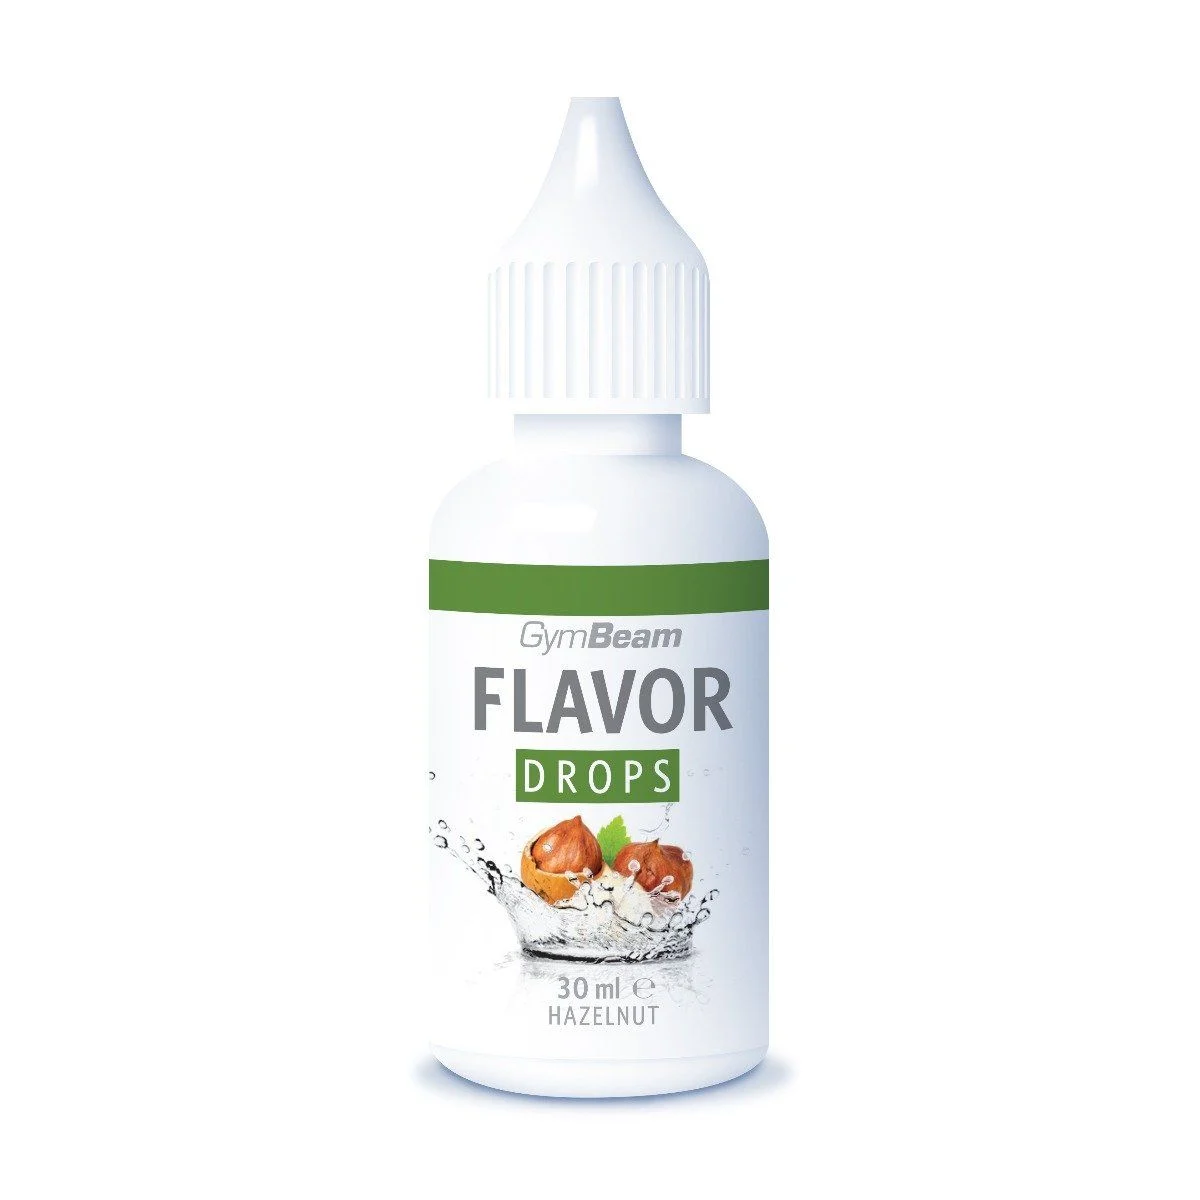 GymBeam Flavor Drops, 30 ml, Hazelnut (04/22)